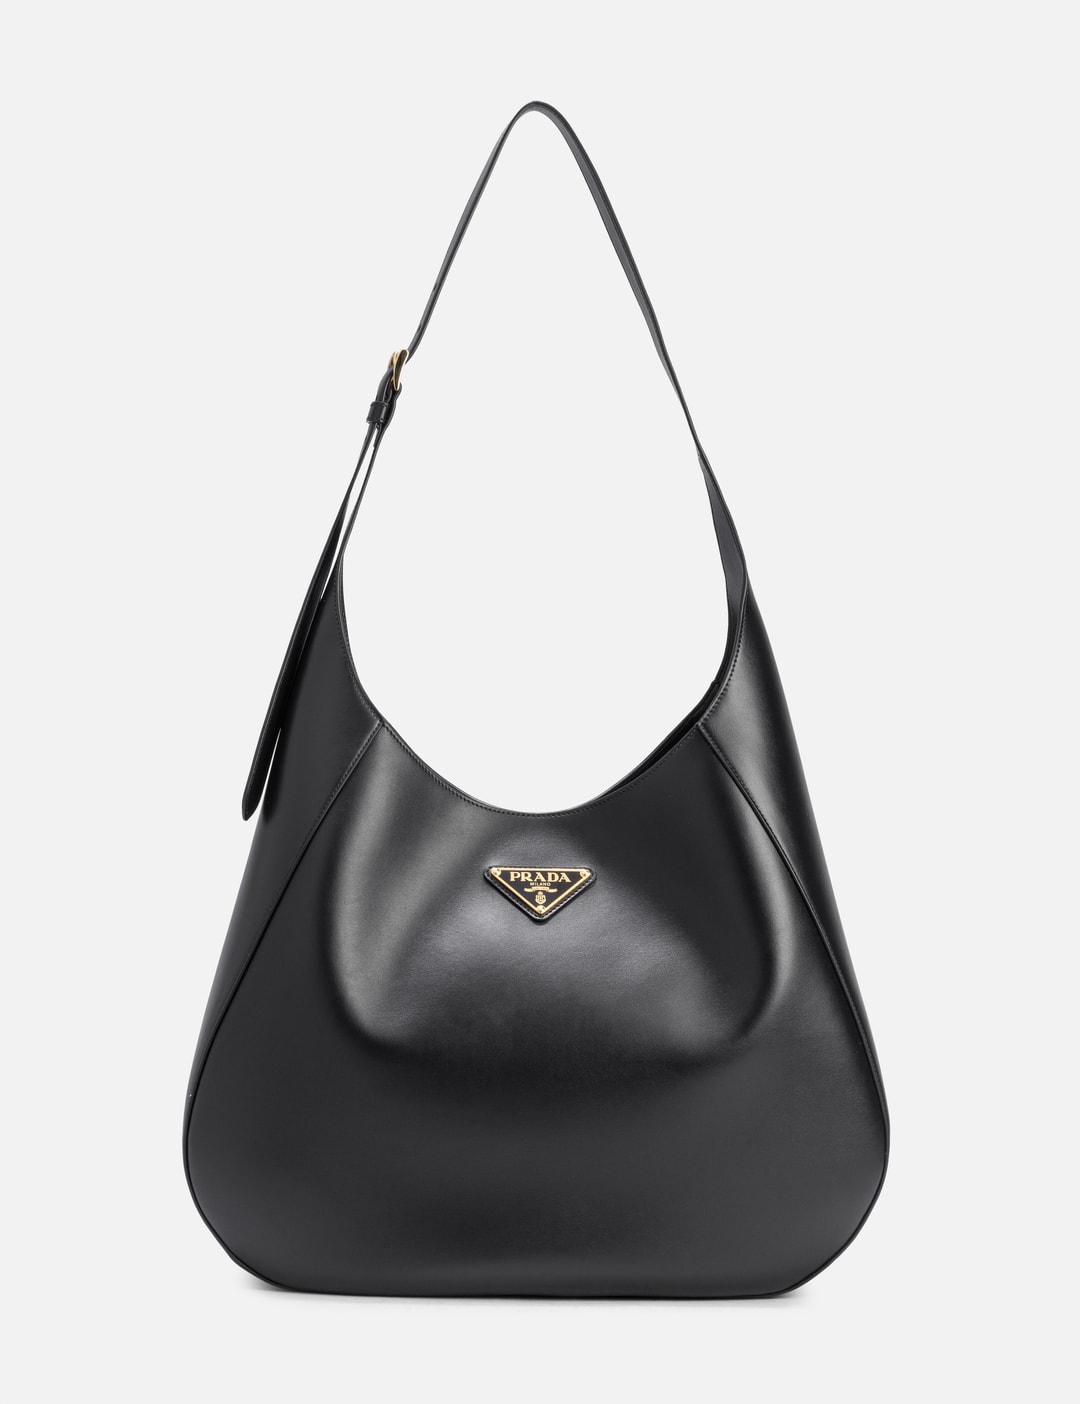 Re-Edition leather shoulder bag, Prada